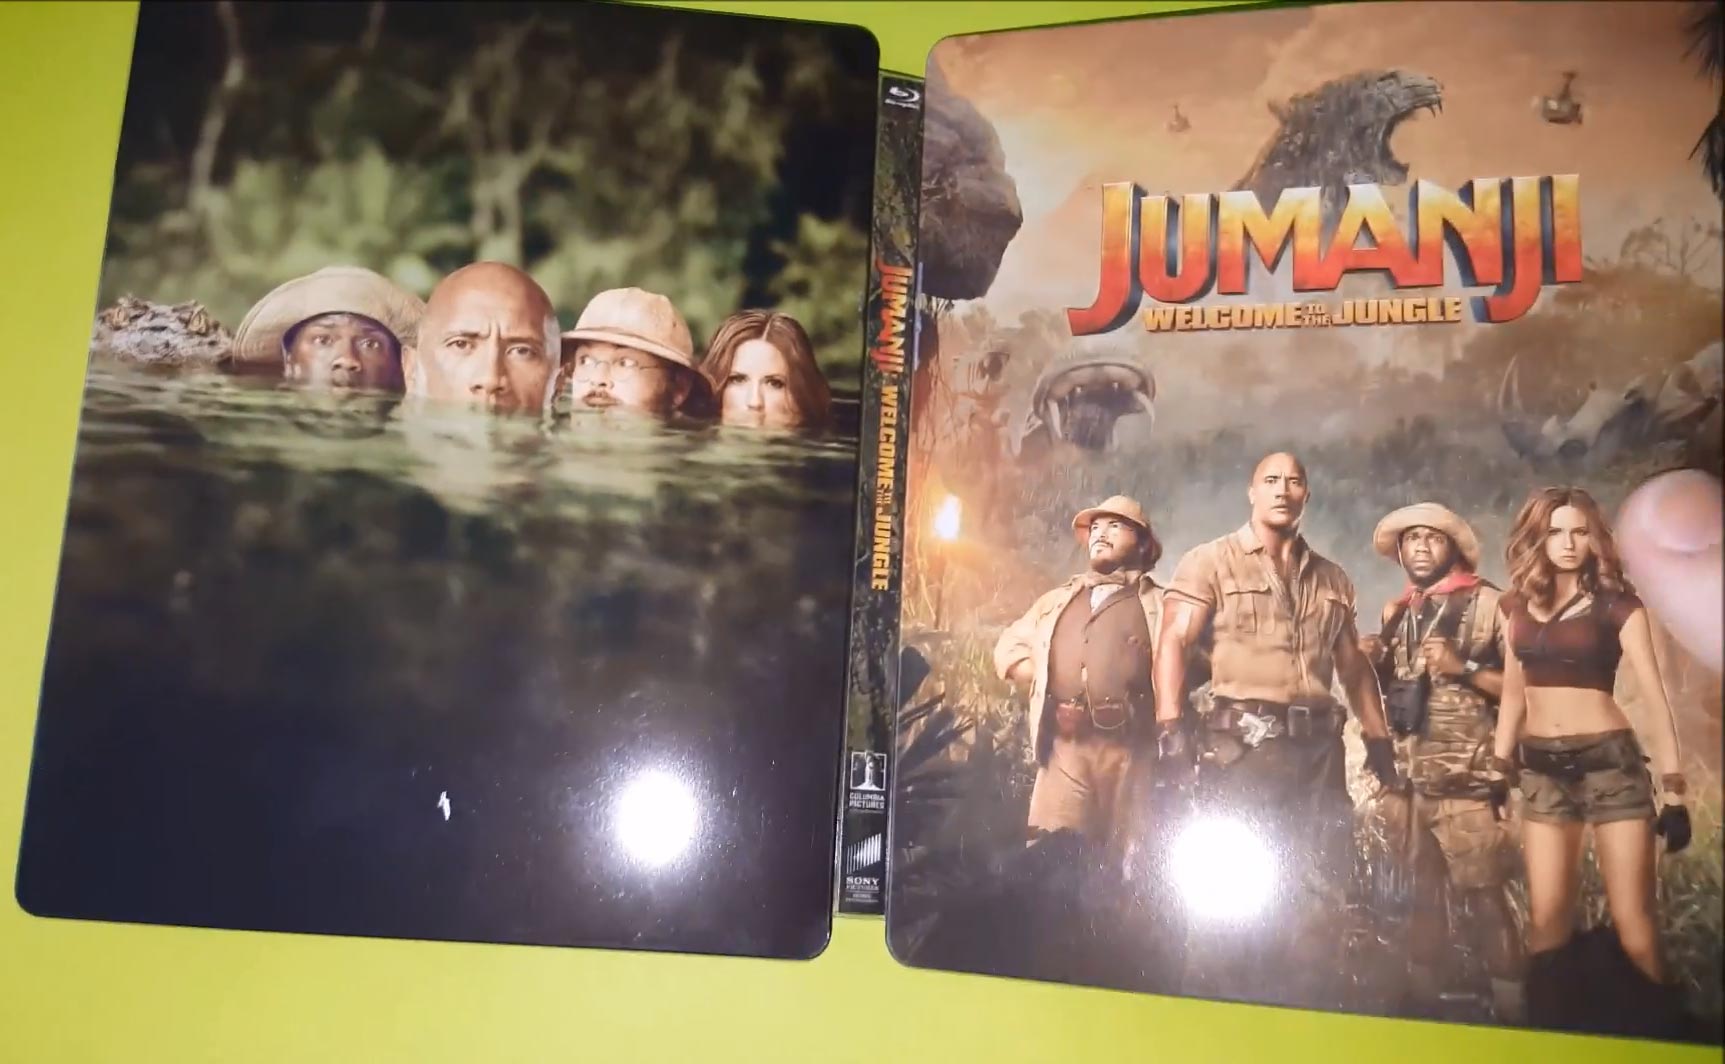 Jumanji-Jungle-steelbook-1